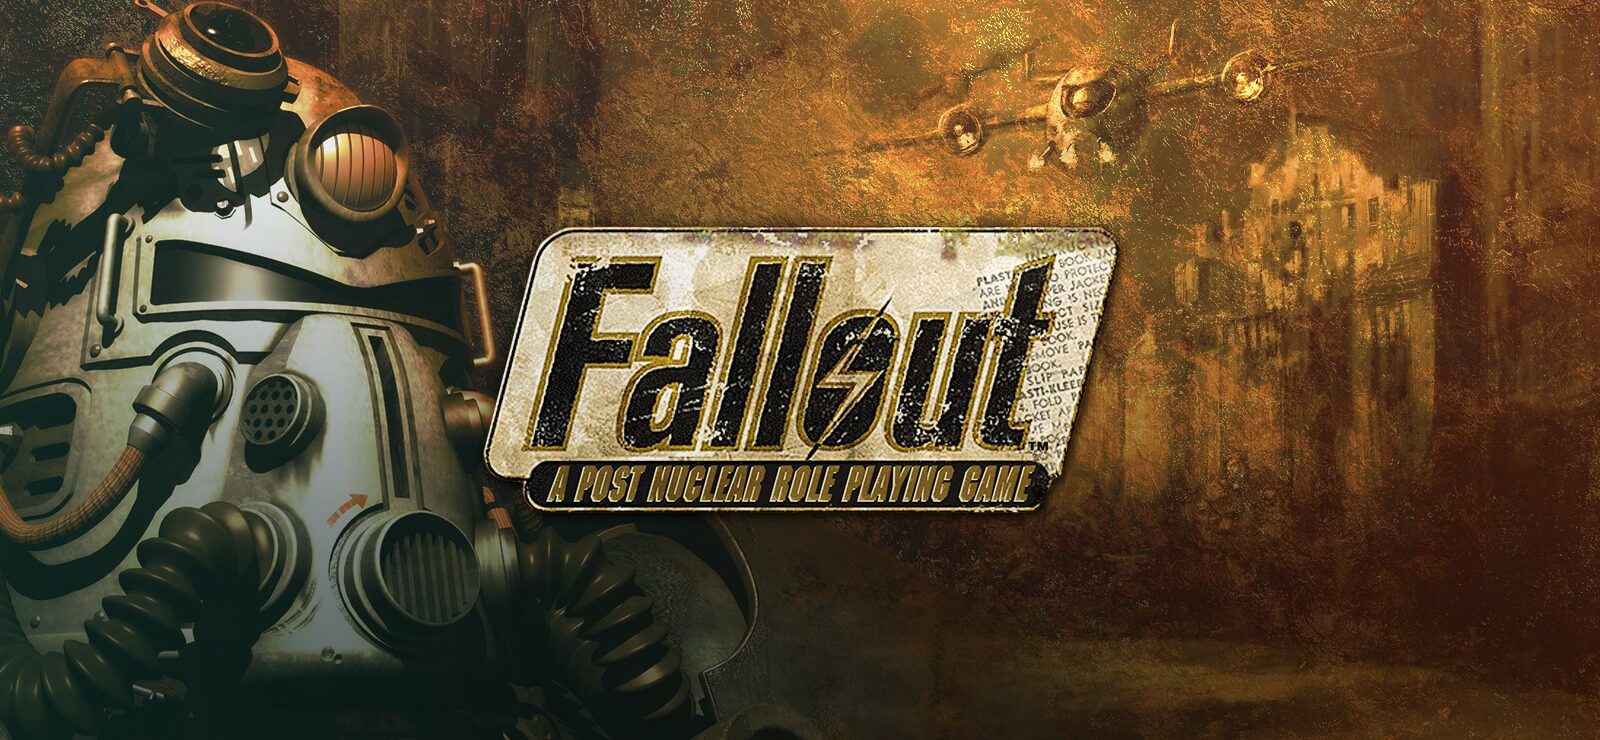 Fallout New Vegas - ПОЛНОЕ ПРОХОЖДЕНИЕ и СЕКРЕТЫ 39 СЕРИЯ приятного просмотра)))